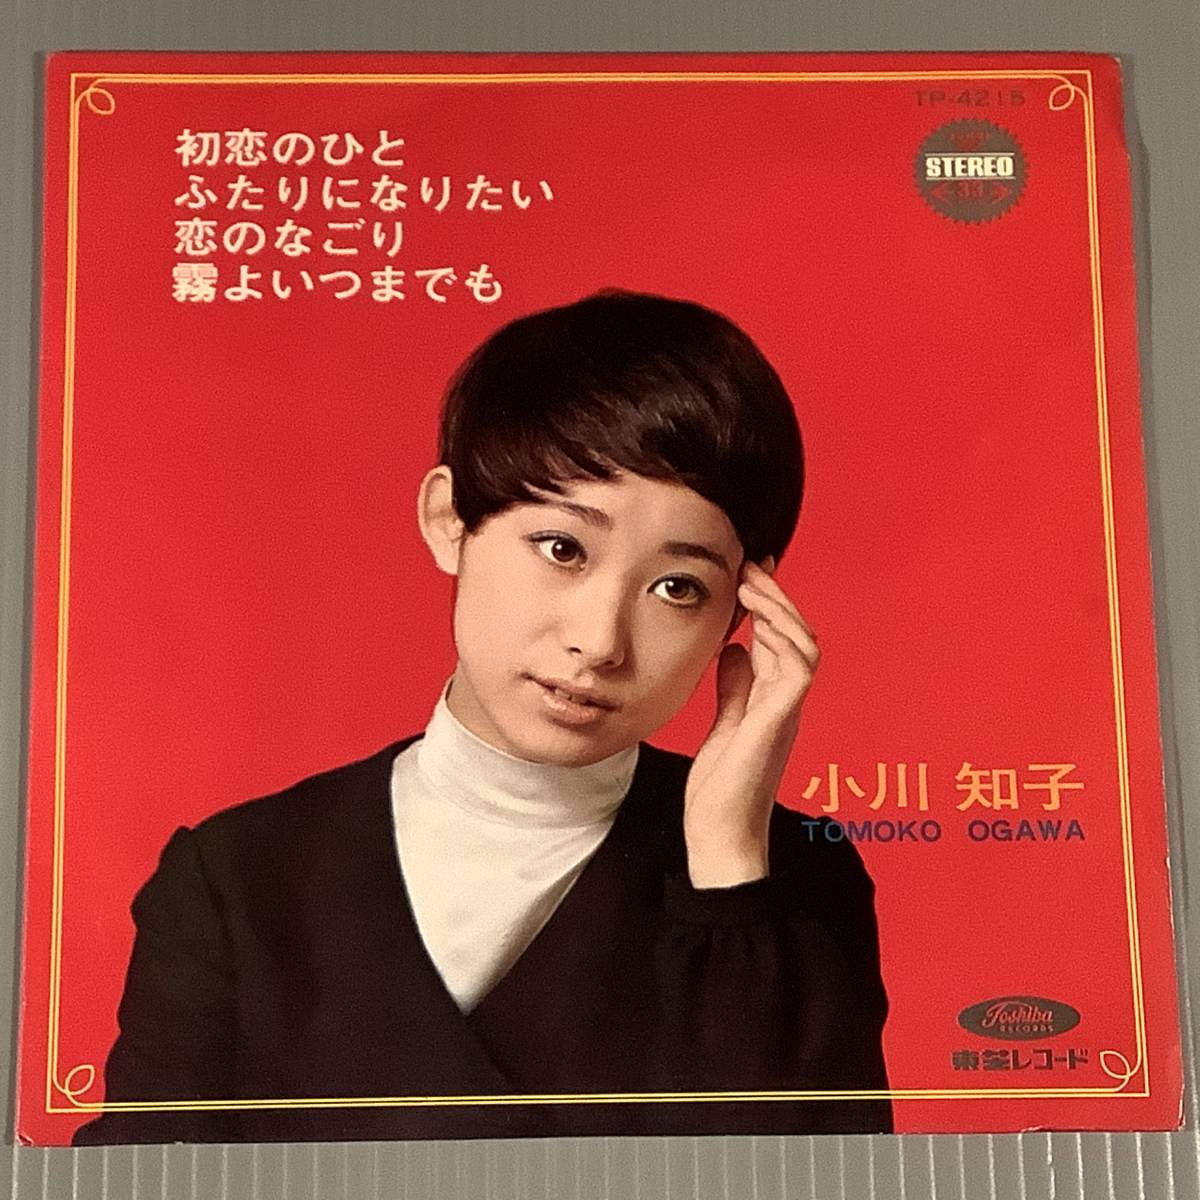 シングル盤(4曲入り EP)▲小川知子『初恋のひと』『ふたりになりたい』『恋のなごり』『霧よいつまでも』▲良好品！_画像1